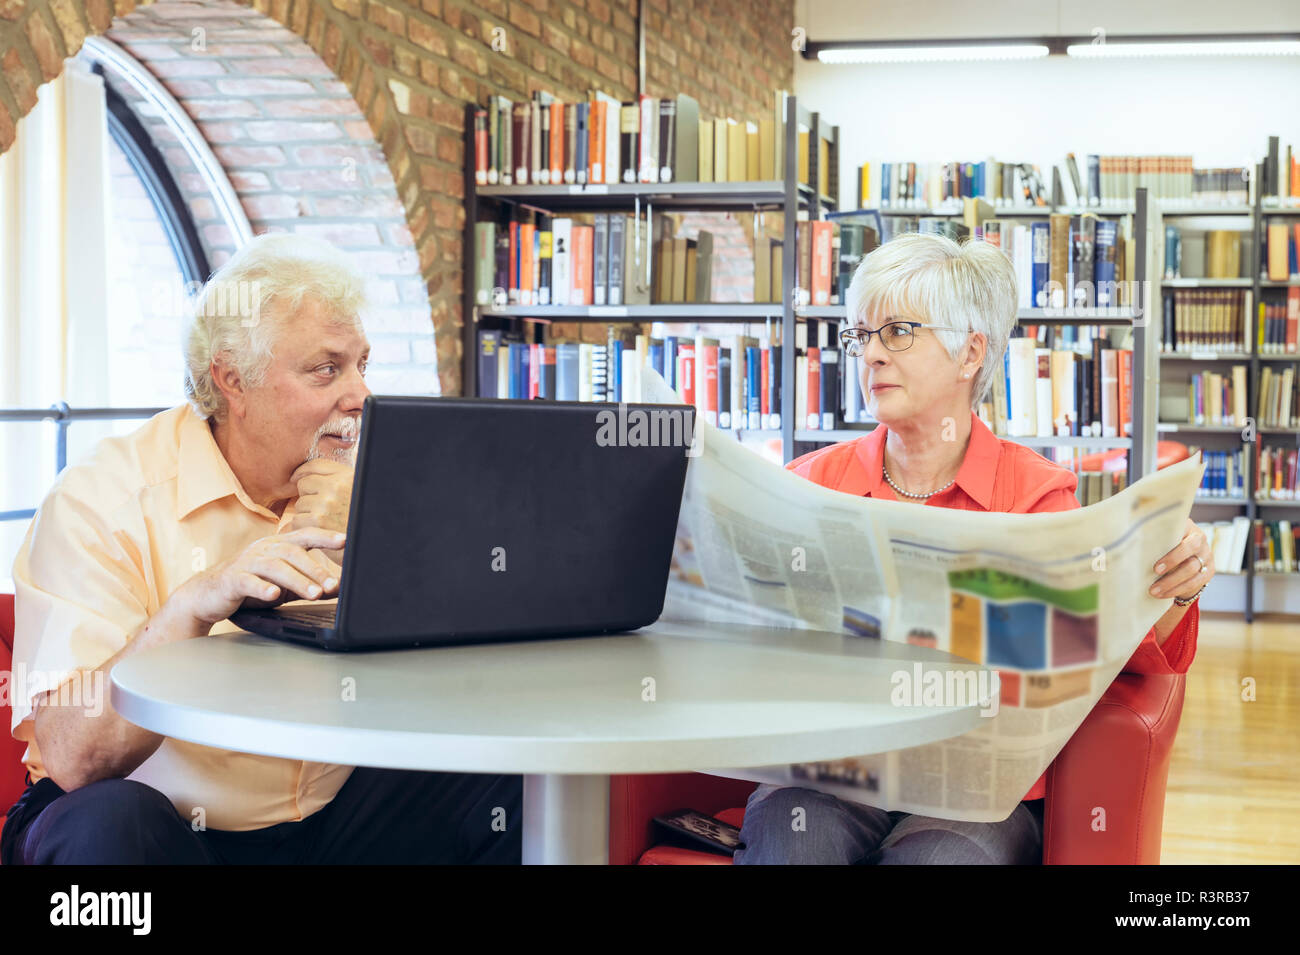 Ein Seniorenpaar sitzen in einer Bücherei und kommunizieren über digitale Medien.  Grevenbroich, Nordrhein-Westfalen, Deutschland Stock Photo